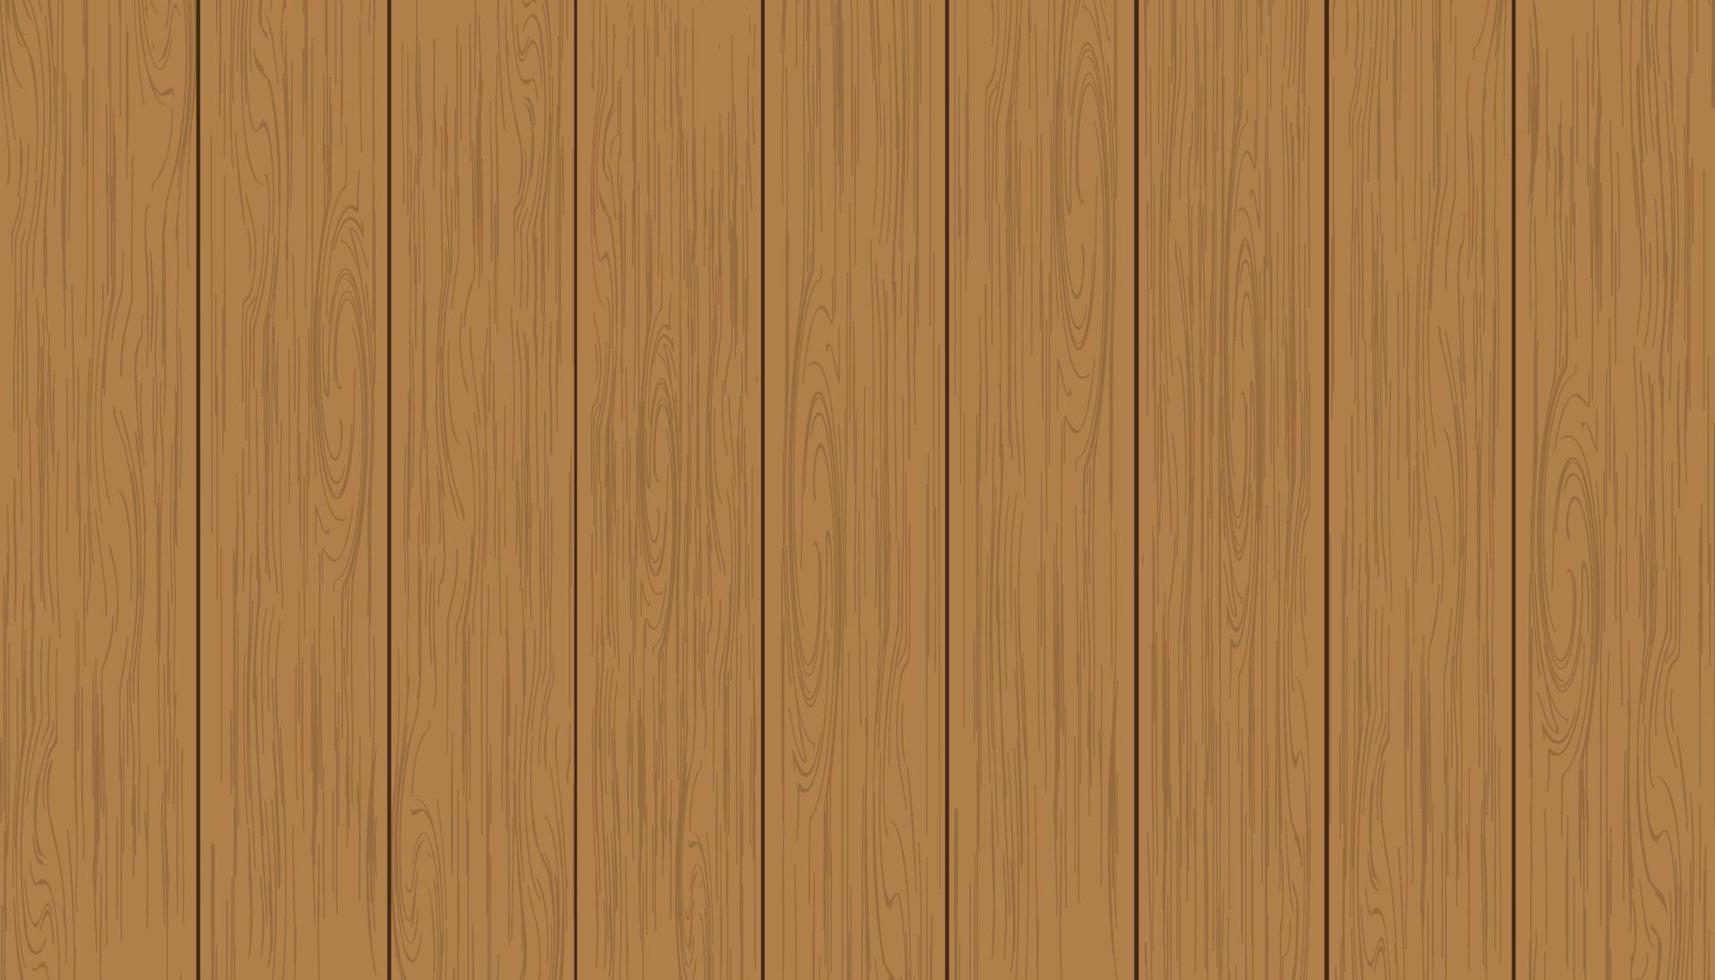 arrière-plan texture bois brun, panneau en bois avec motif abstrait, vue de dessus de table d'illustration vectorielle de la surface du plancher de bois franc, toile de fond en bois 3d idéale pour l'arrière-plan publicitaire vecteur